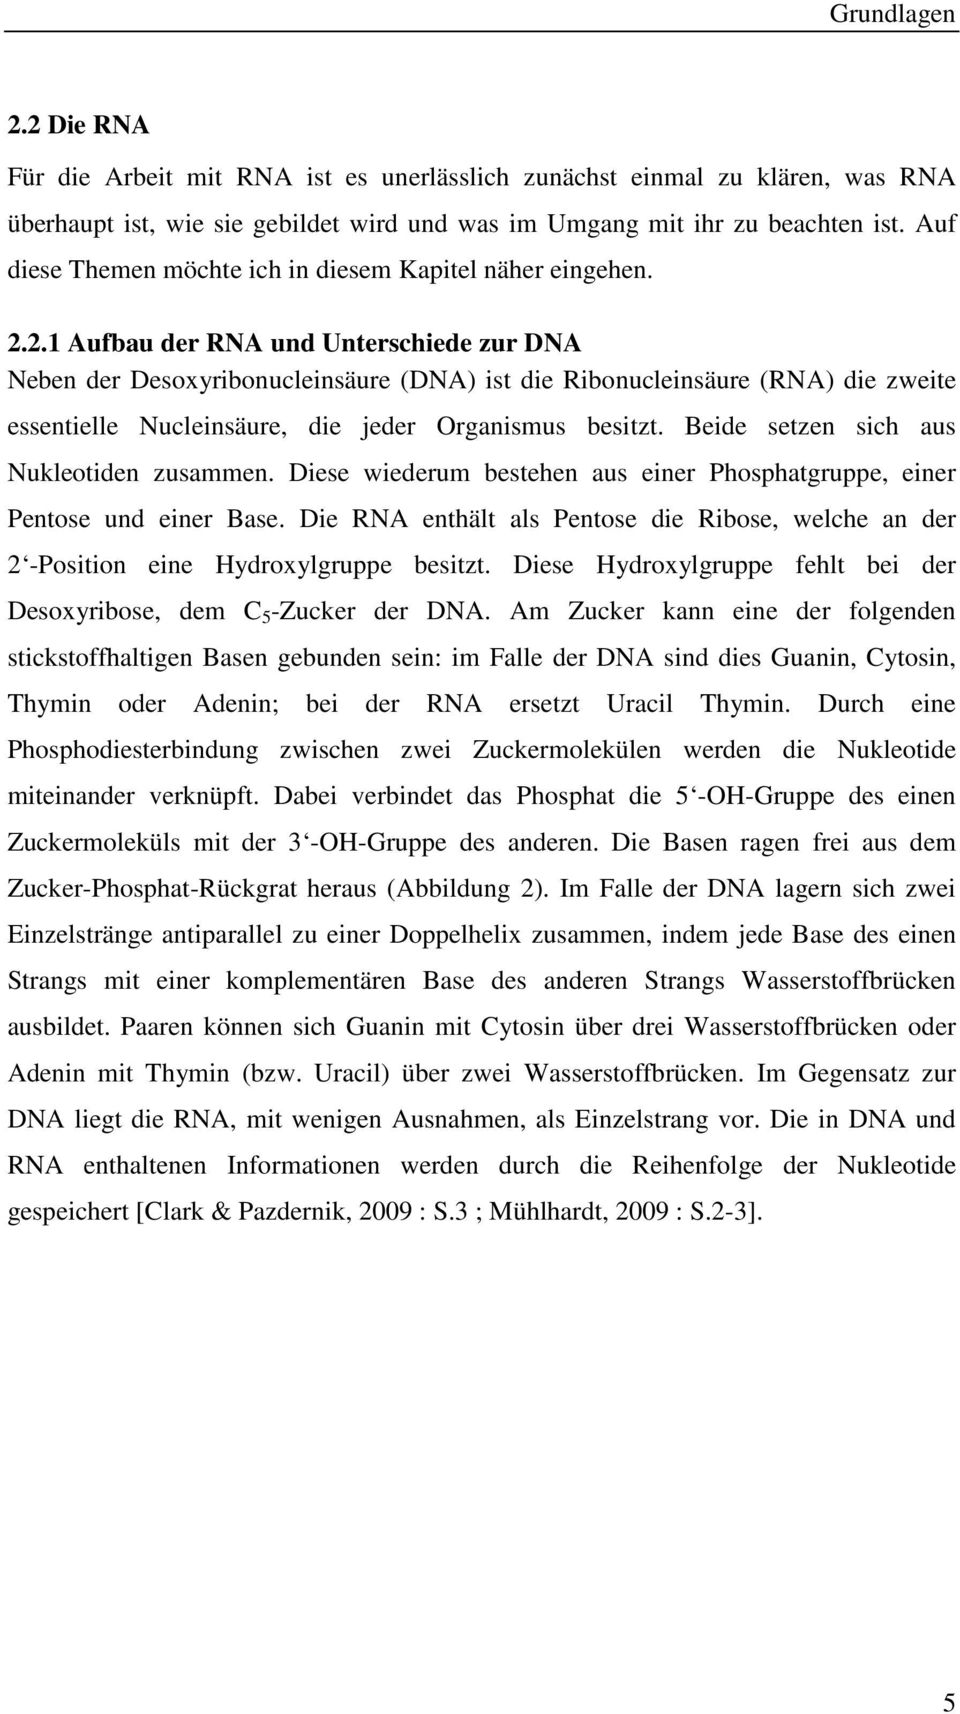 2.1 Aufbau der RNA und Unterschiede zur DNA Neben der Desoxyribonucleinsäure (DNA) ist die Ribonucleinsäure (RNA) die zweite essentielle Nucleinsäure, die jeder Organismus besitzt.